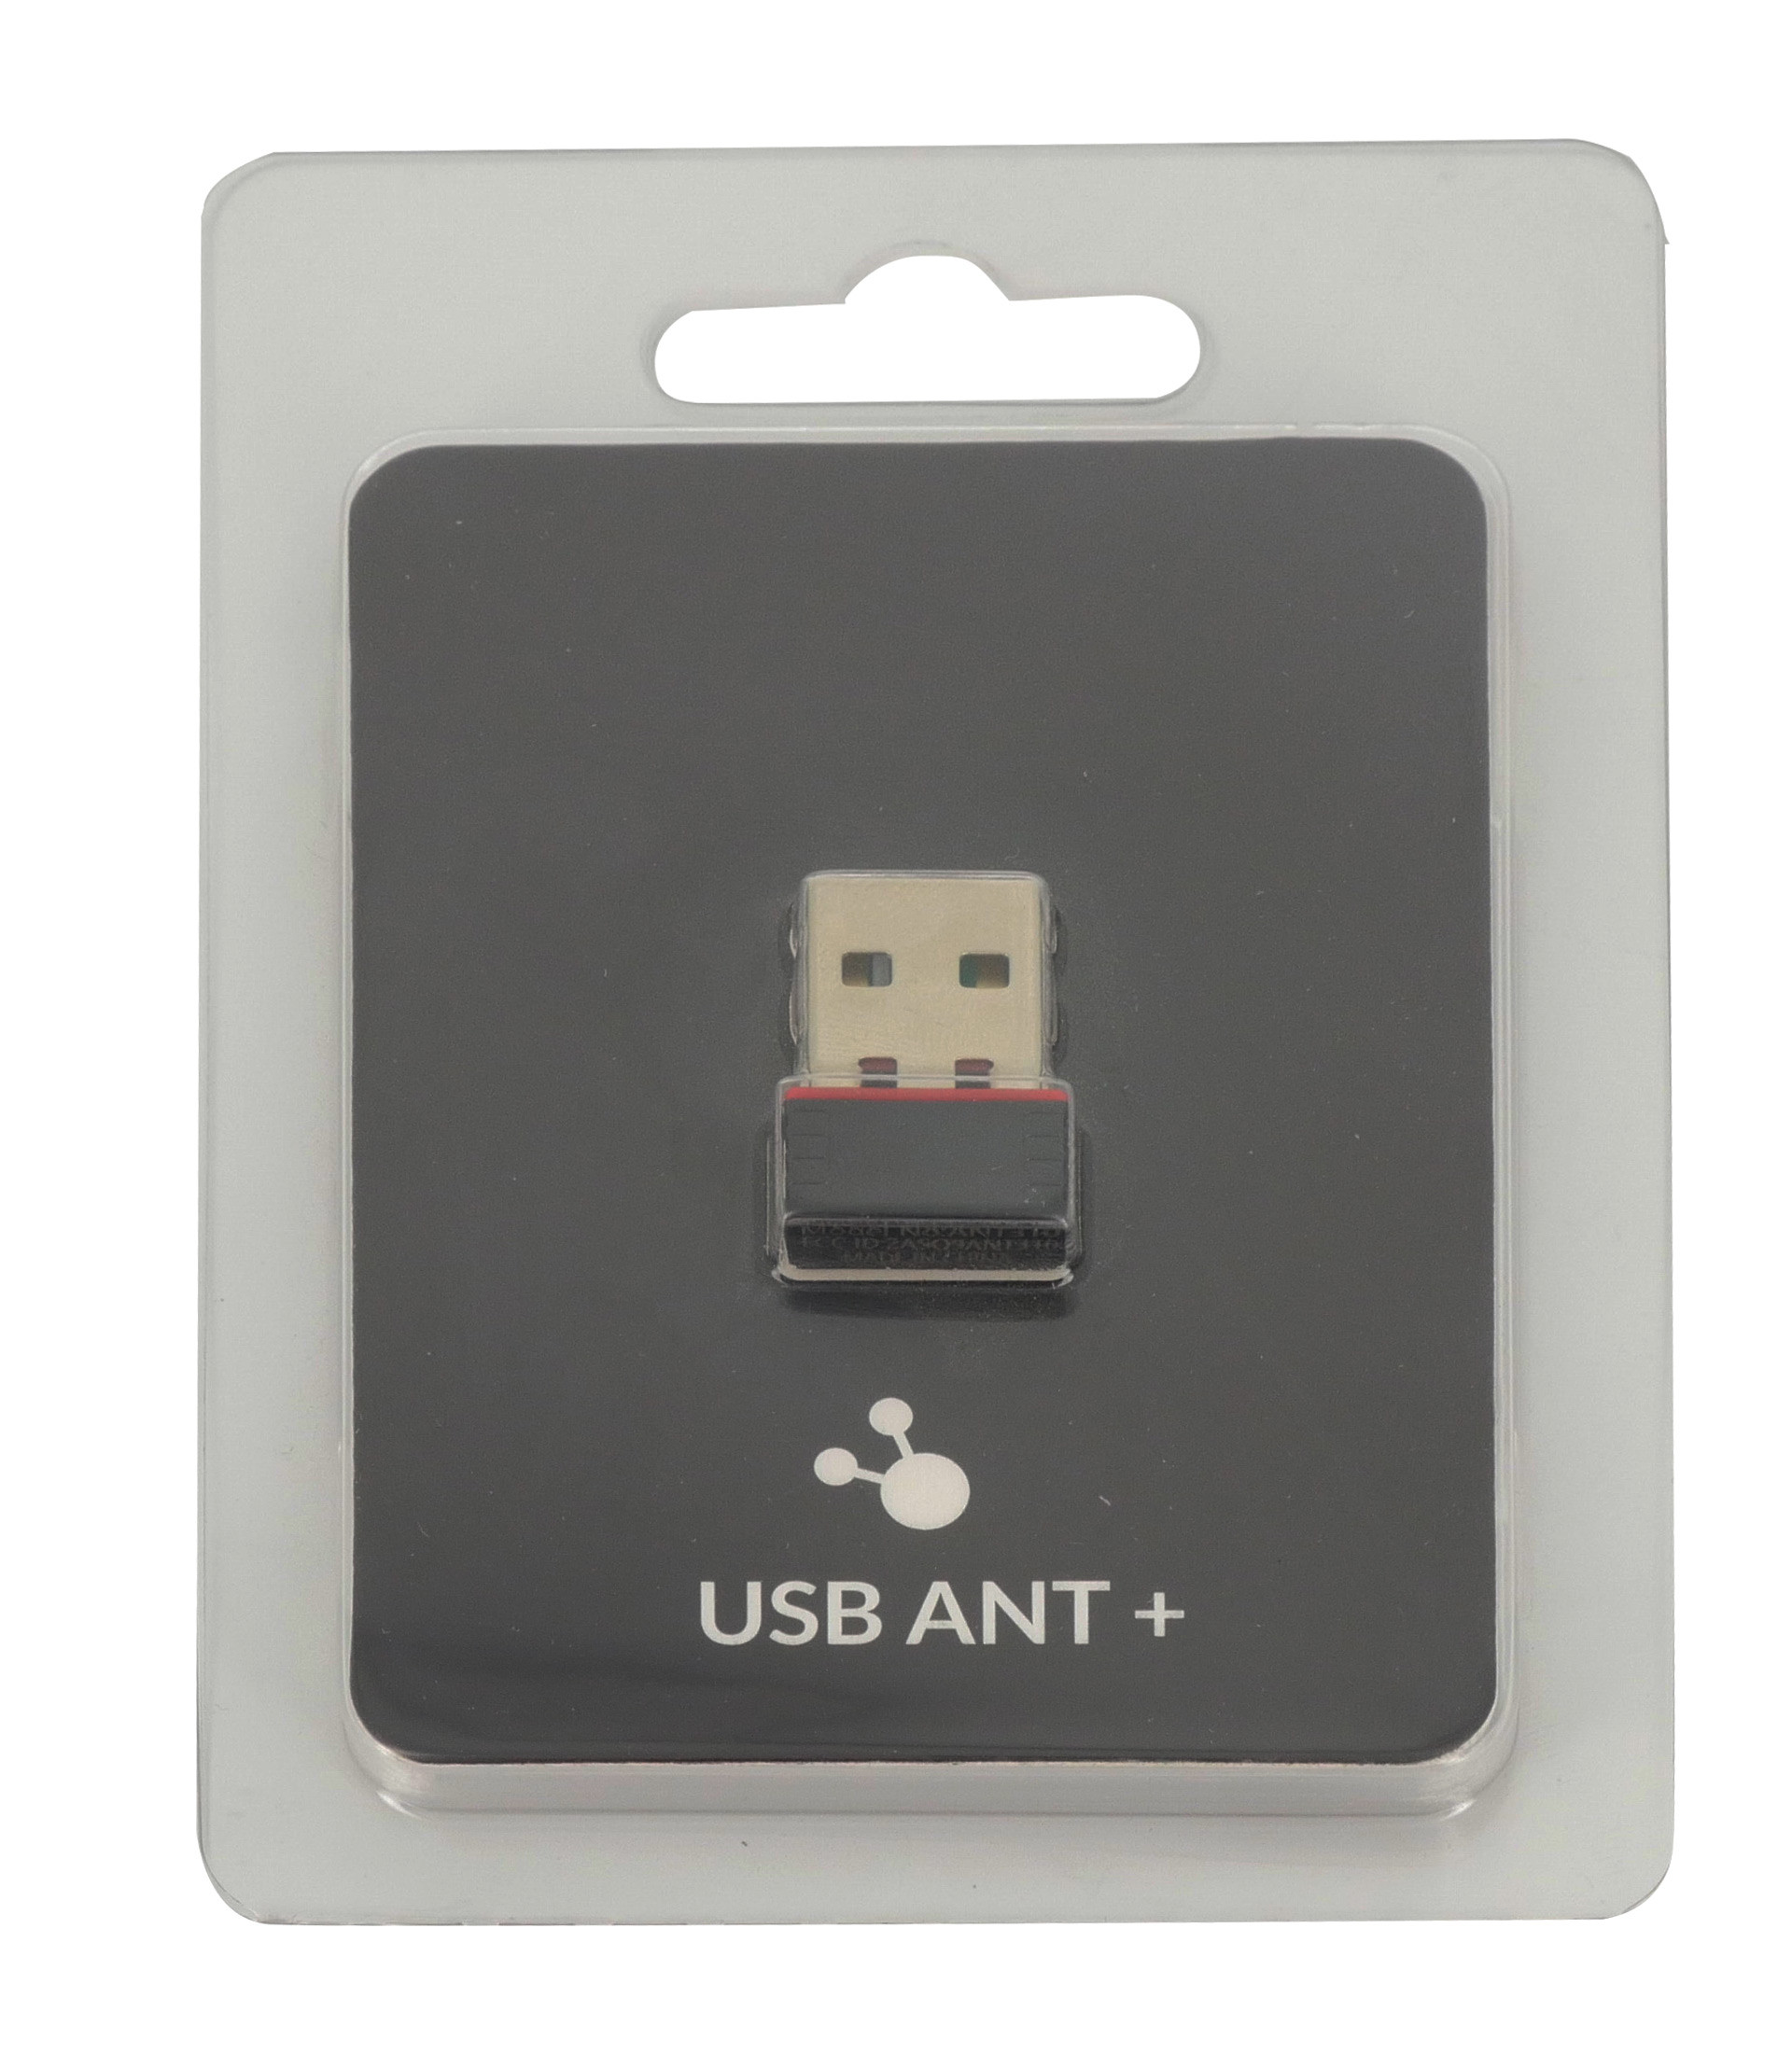 CLÉ USB ANT+